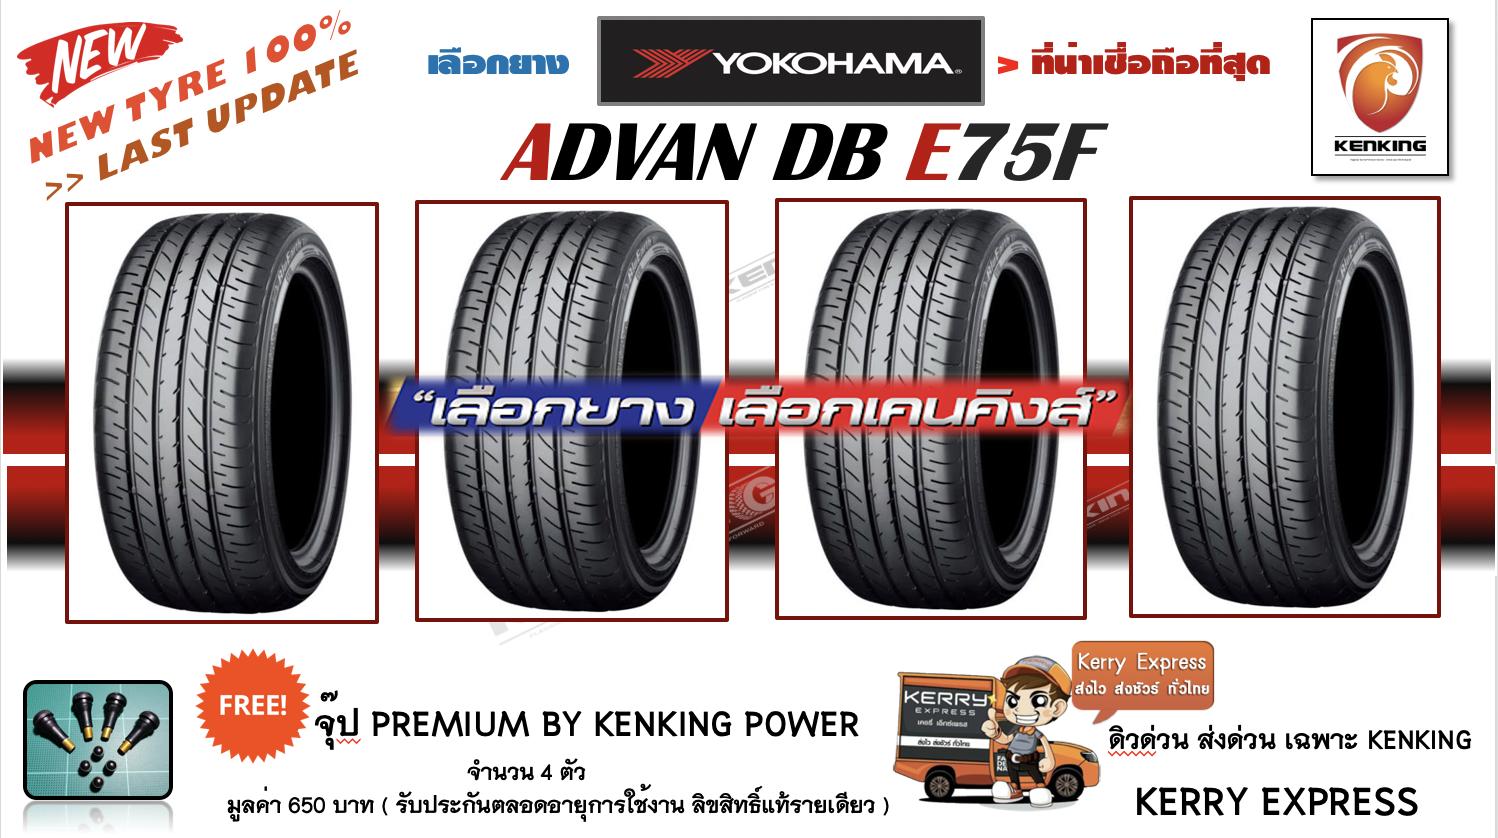 ประกันภัย รถยนต์ 2+ พัทลุง ยางรถยนต์ขอบ16 YOKOHAMA 215/60 R16 BluEarth E75F NEW!! 2019 ( 4 เส้น ) FREE !! จุ๊ป PREMIUM BY KENKING POWER 650 บาท MADE IN JAPAN แท้ (ลิขสิทธิืแท้รายเดียว)